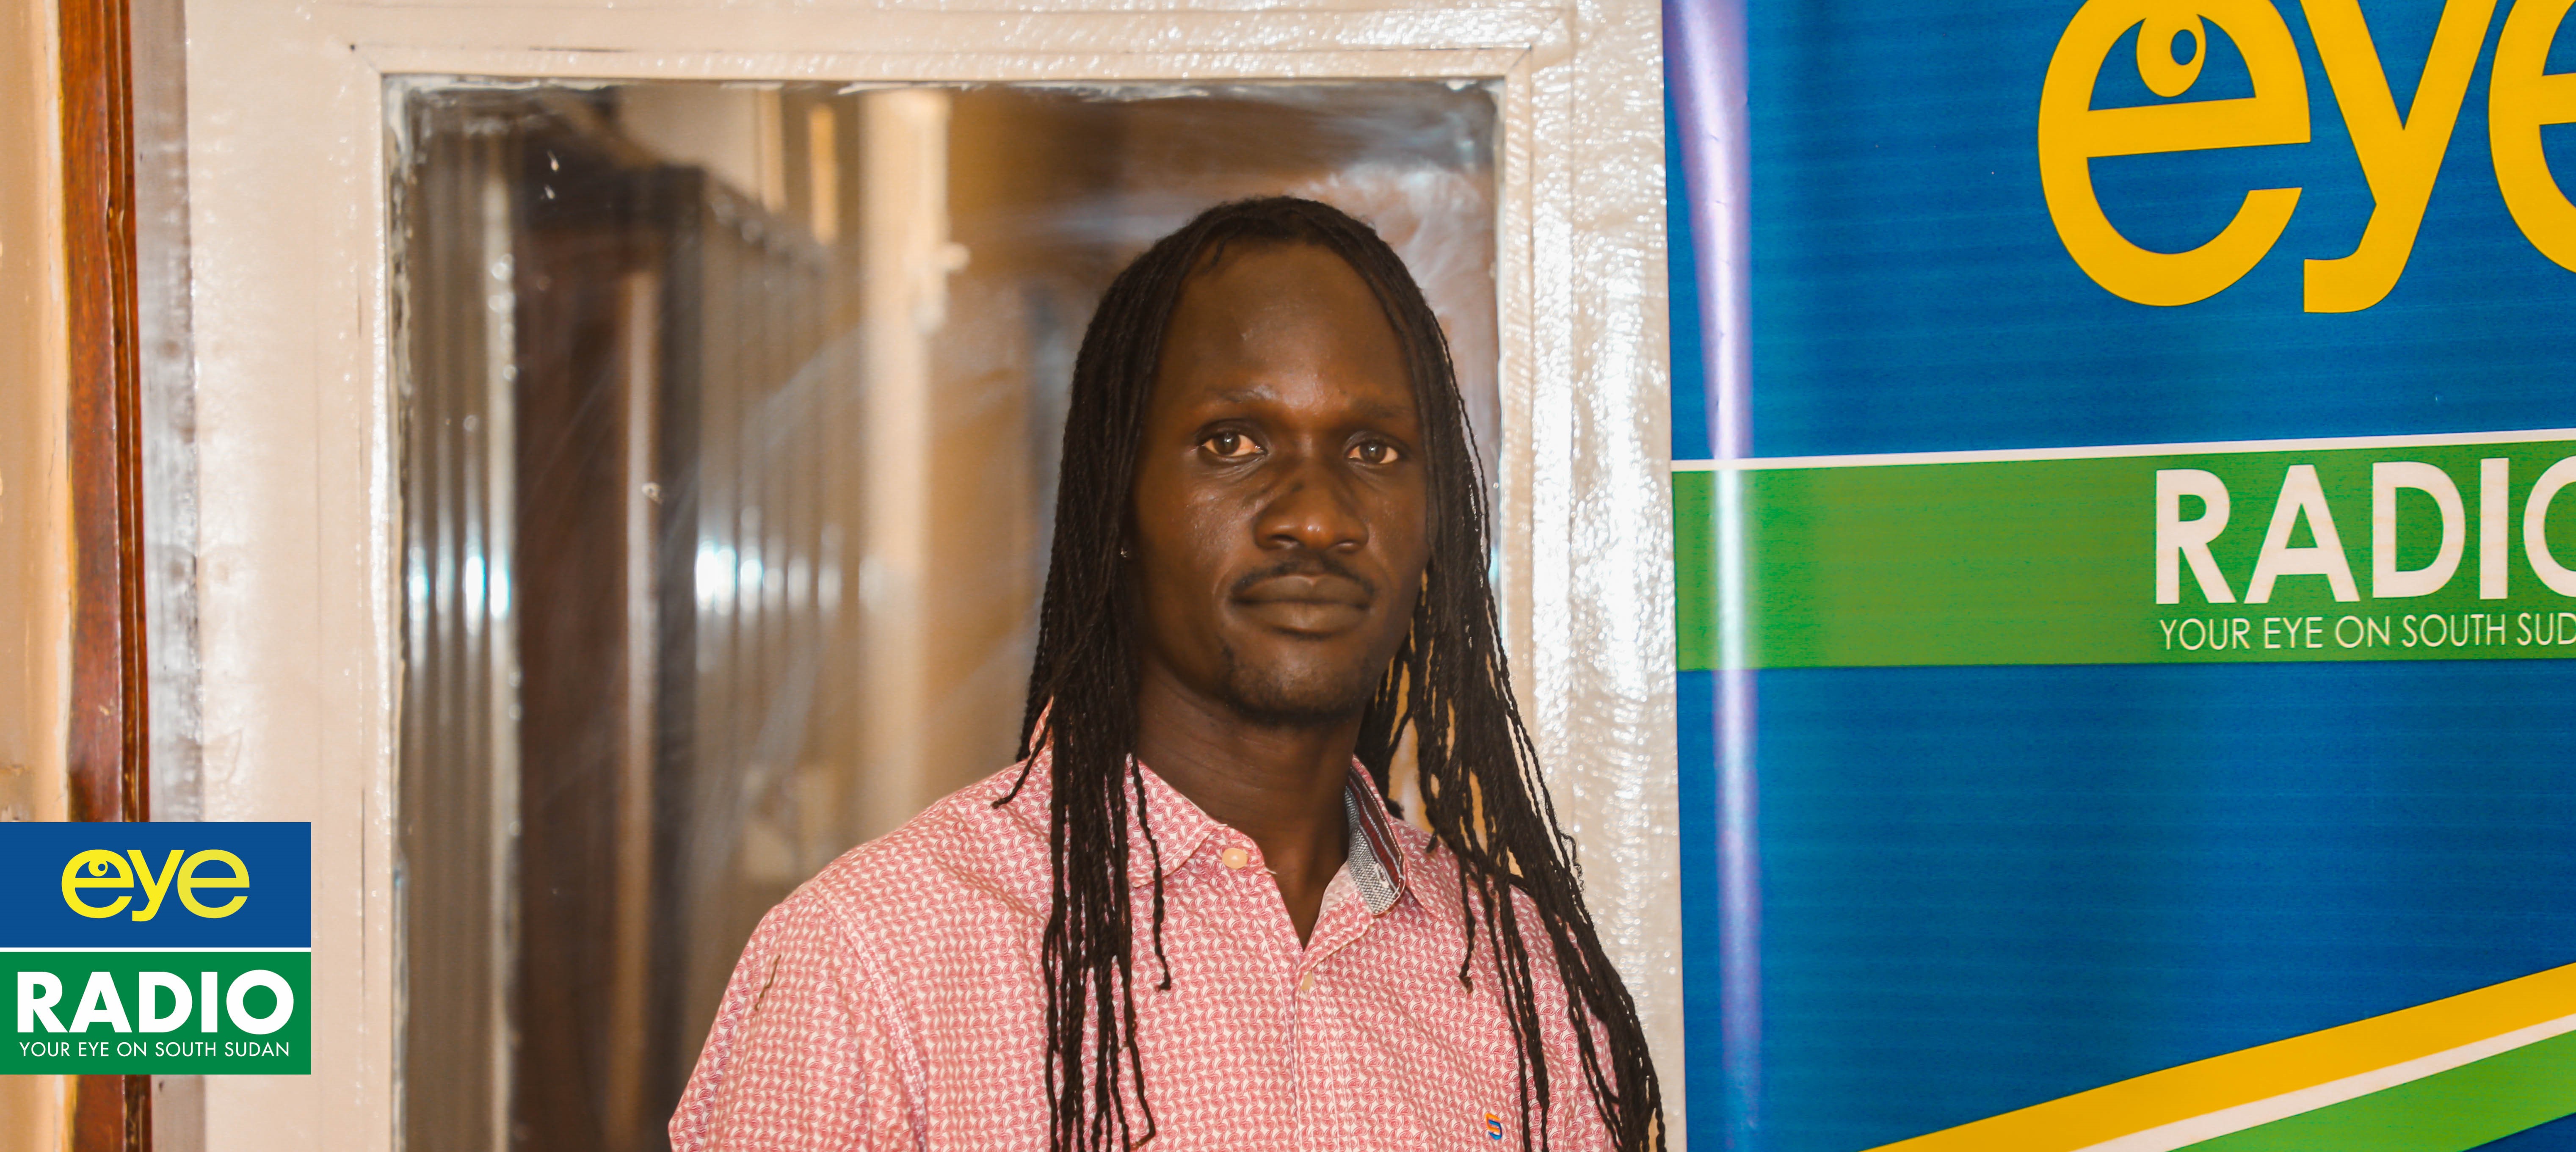 Film Maker Alex Joseph to represent S Sudan at LAFF 2021